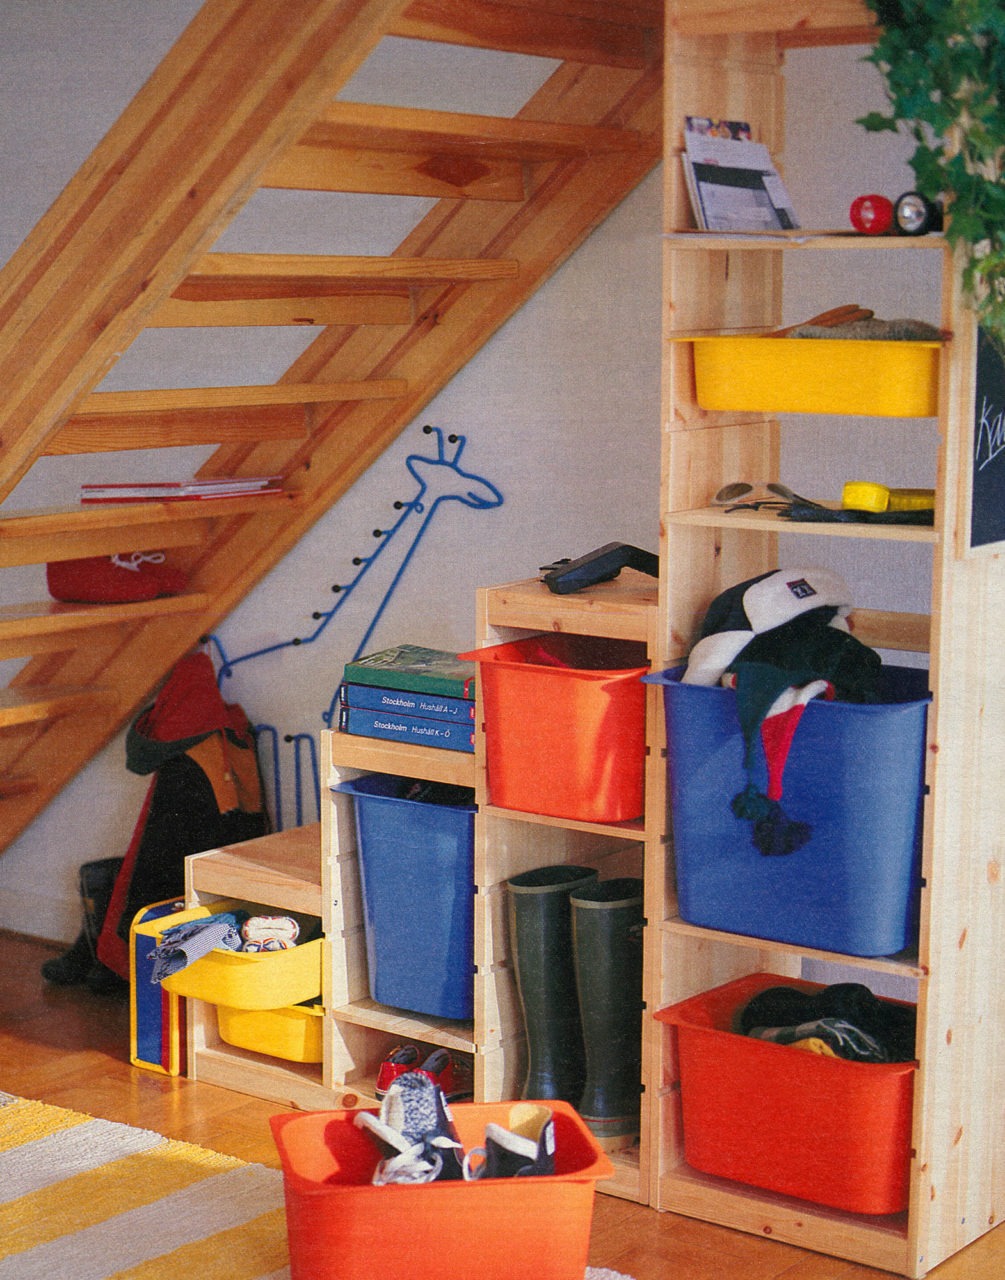 Treppenförmiges Aufbewahrungsmöbel aus hellem Holz mit bunten Schubkästen unter einer offenen Treppe aus hellem Holz.